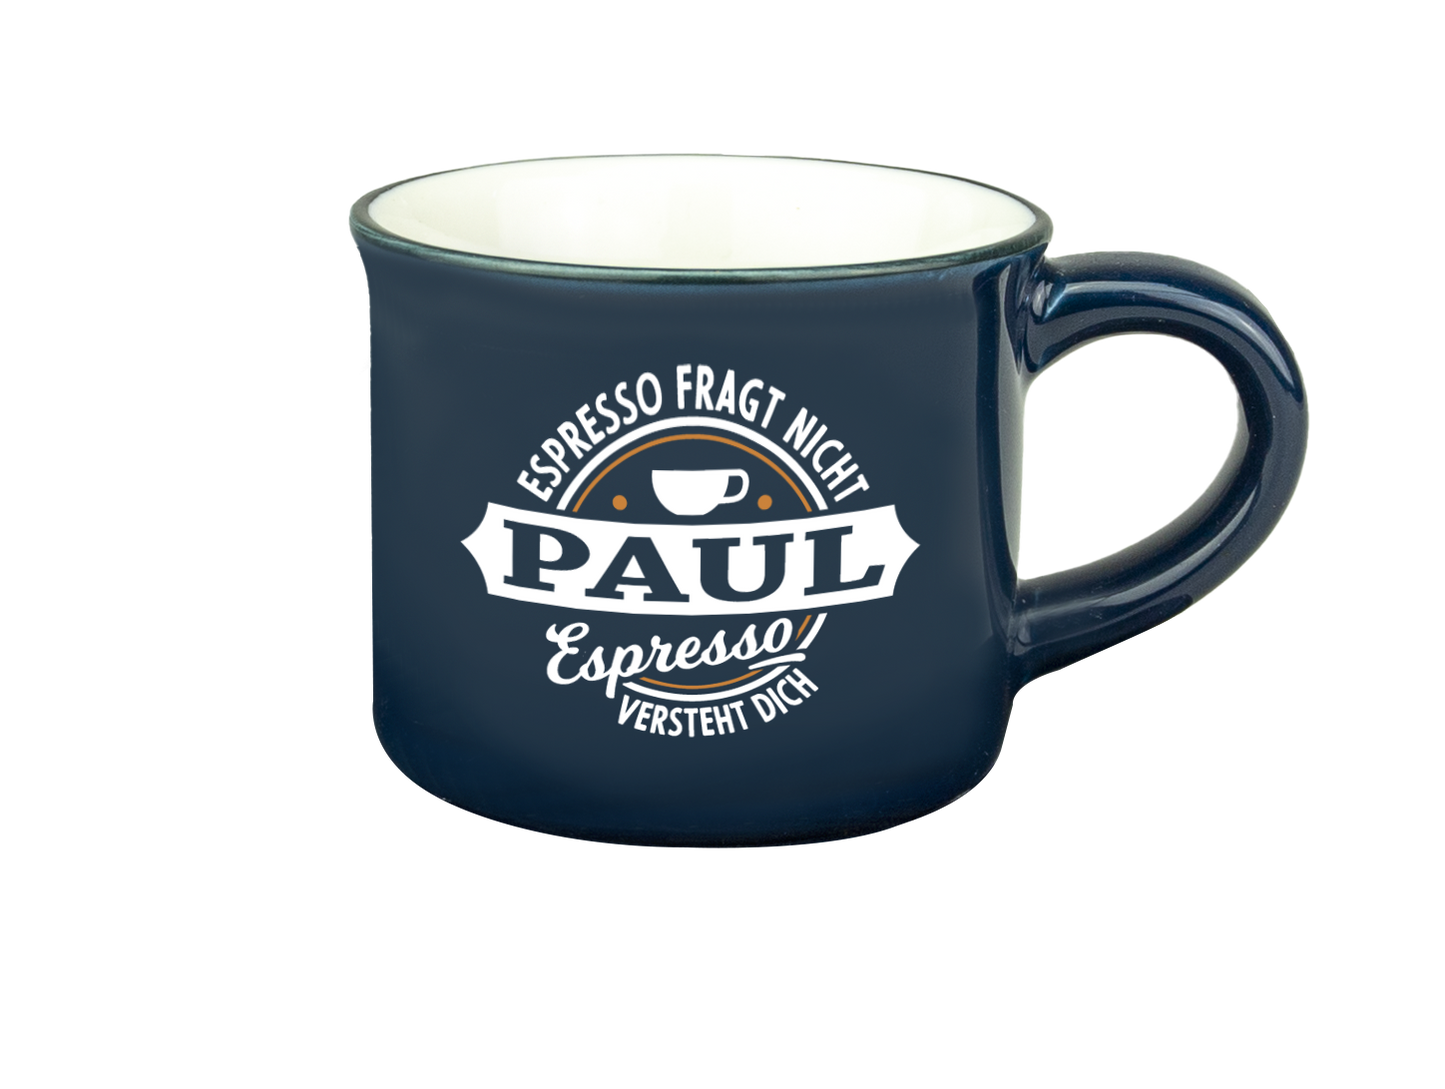 H & H Espresso-Tasse - Espresso fragt nicht Paul Espresso versteht Dich